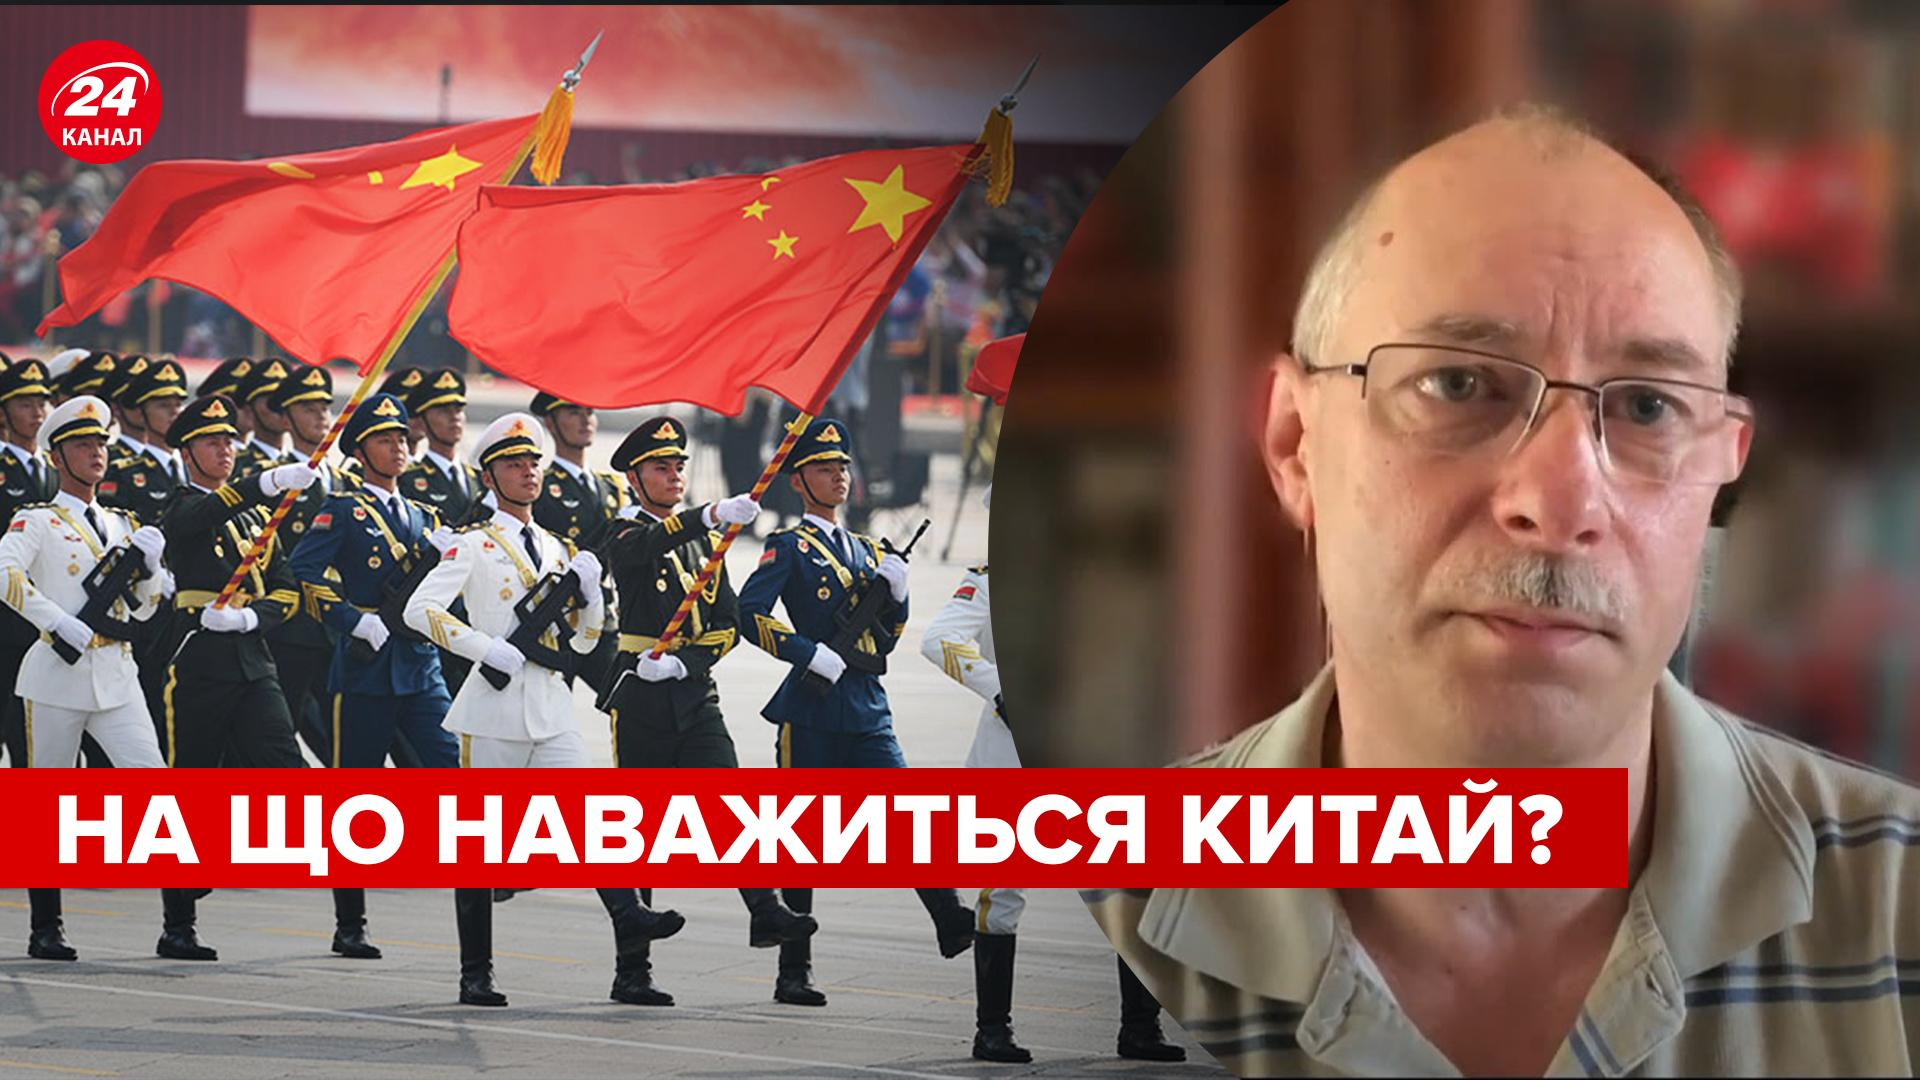 Пойдет ли КНР на военную конфронтацию из США - предположение Жданова - 24 Канал